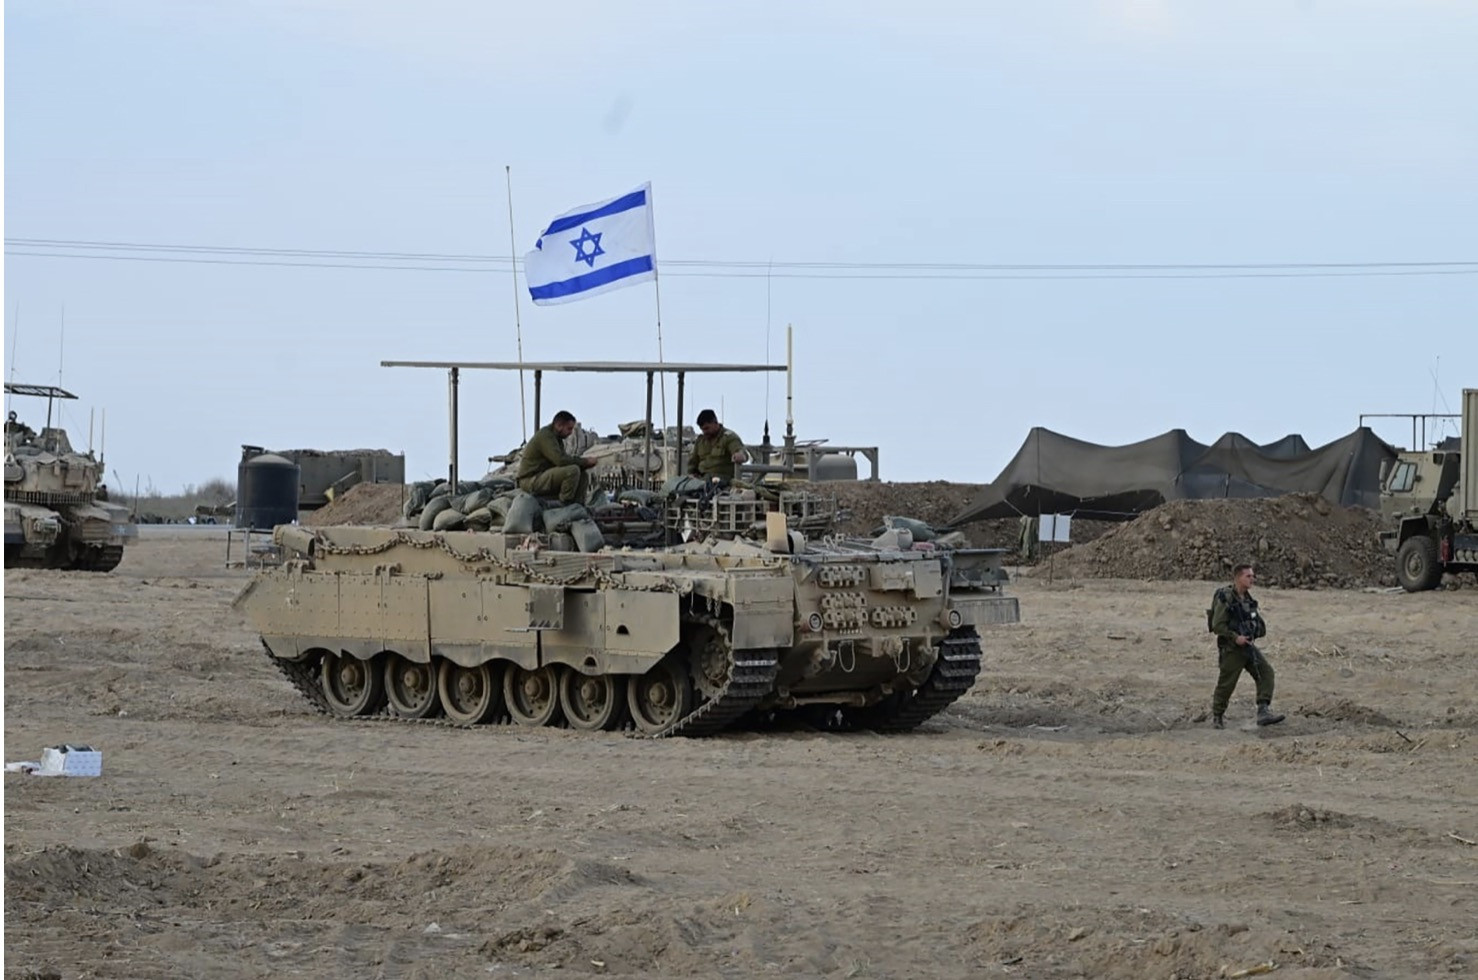 Video bộ binh Israel hành quân ở Gaza, 300 mục tiêu của Hamas bị tấn công